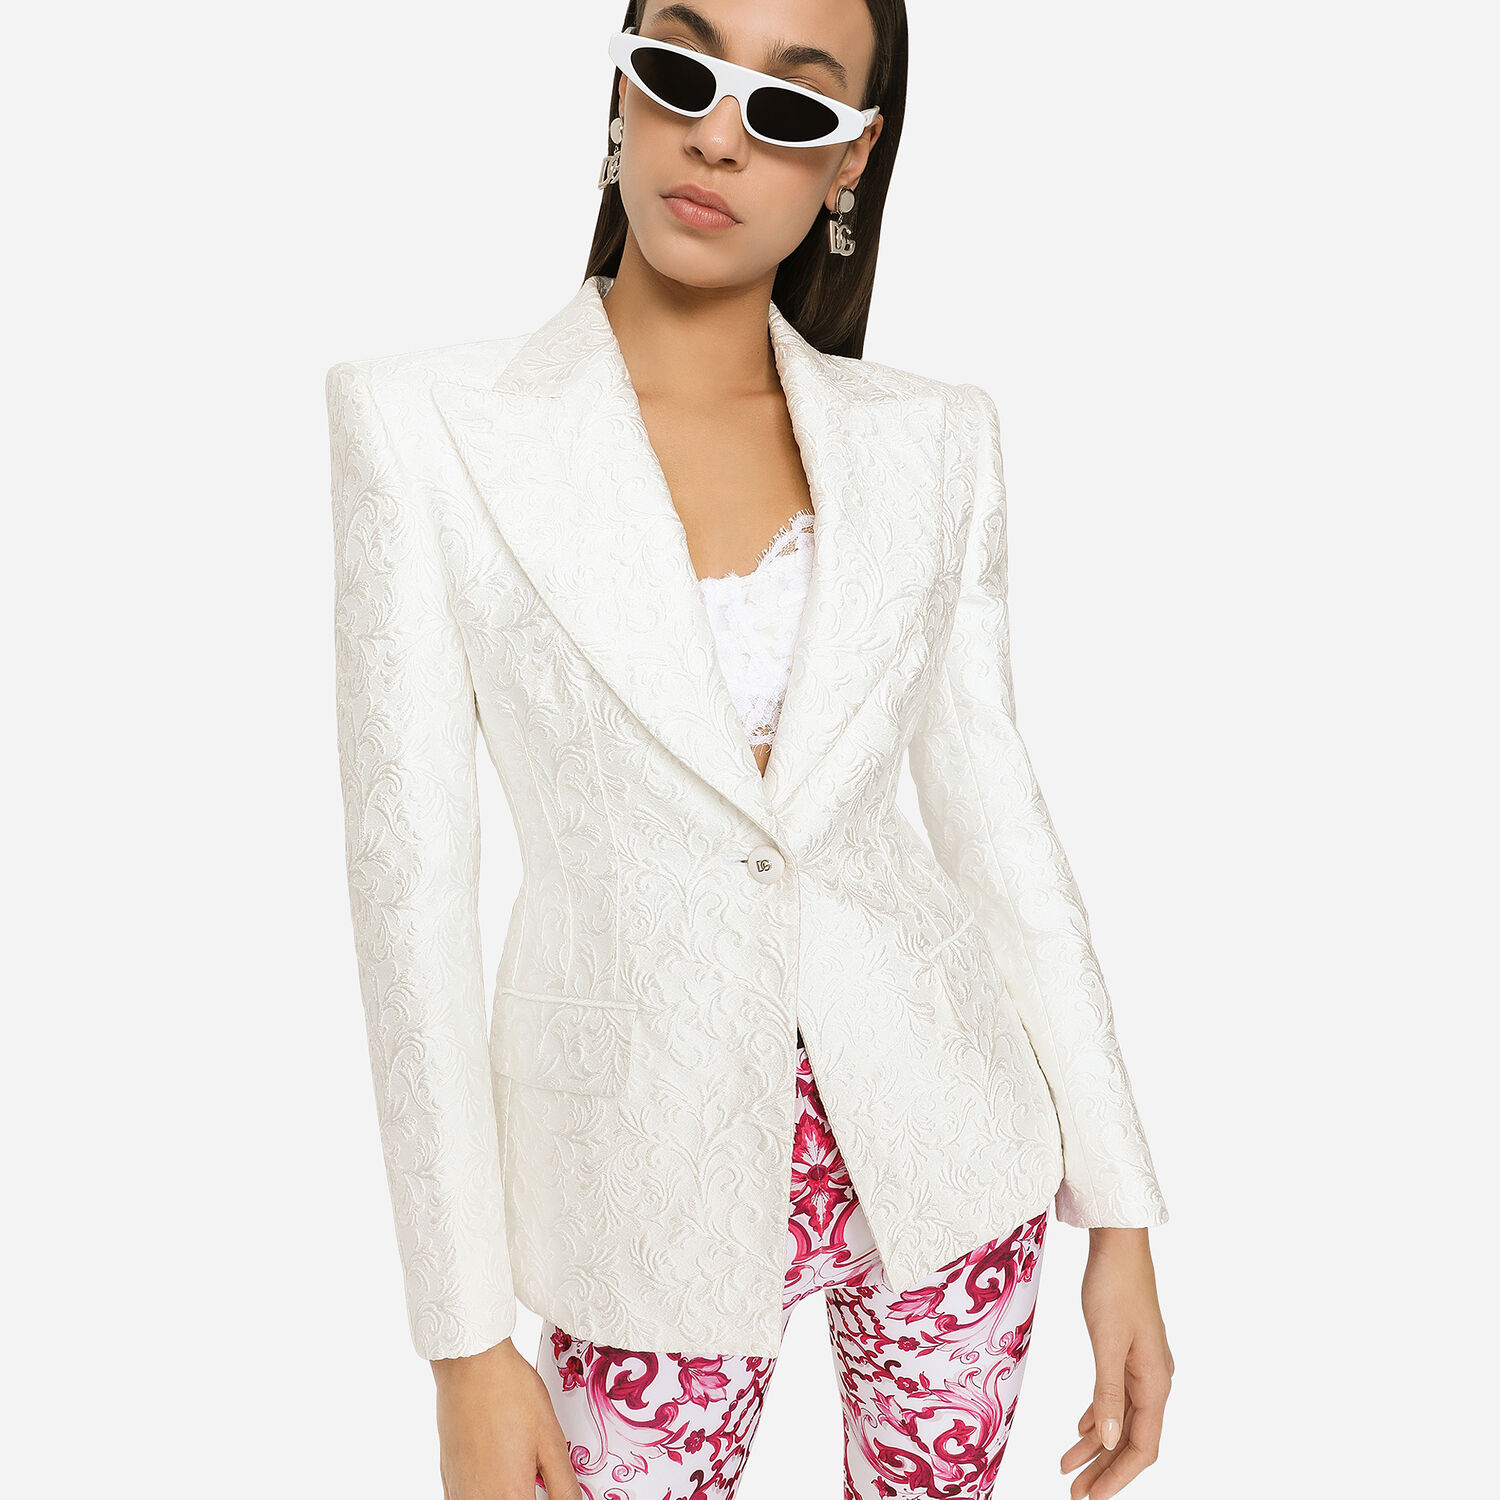 Dolce & Gabbana Silver Fabric Brocade Pant Suit Size 8/42 - Yoogi's Closet